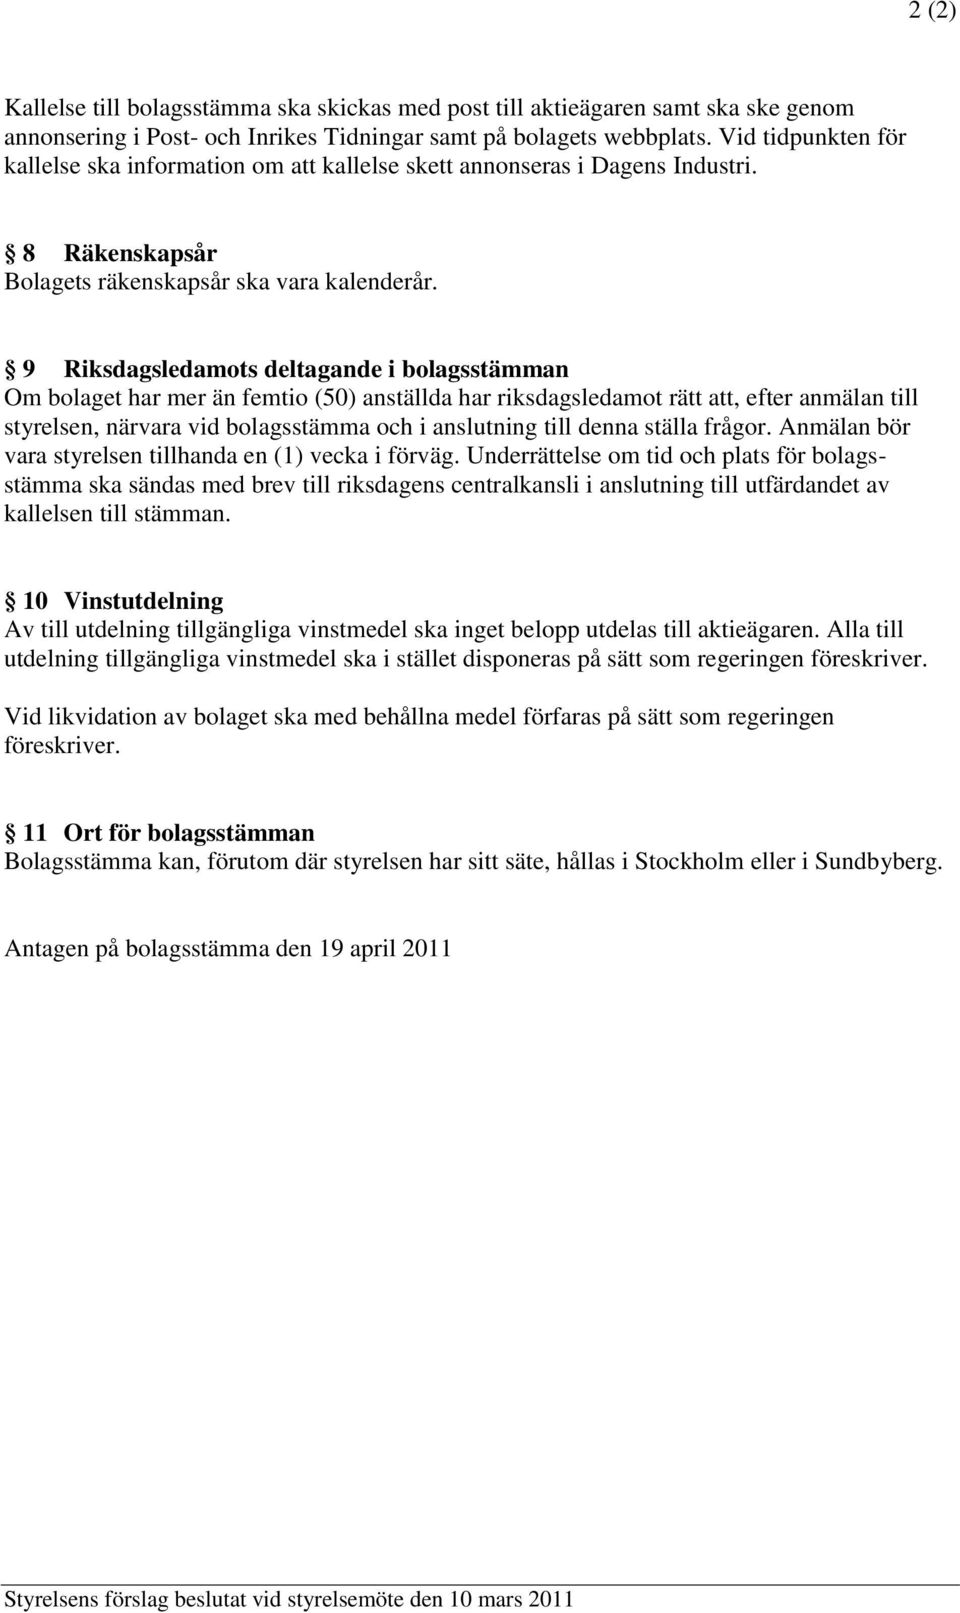 9 Riksdagsledamots deltagande i bolagsstämman Om bolaget har mer än femtio (50) anställda har riksdagsledamot rätt att, efter anmälan till styrelsen, närvara vid bolagsstämma och i anslutning till